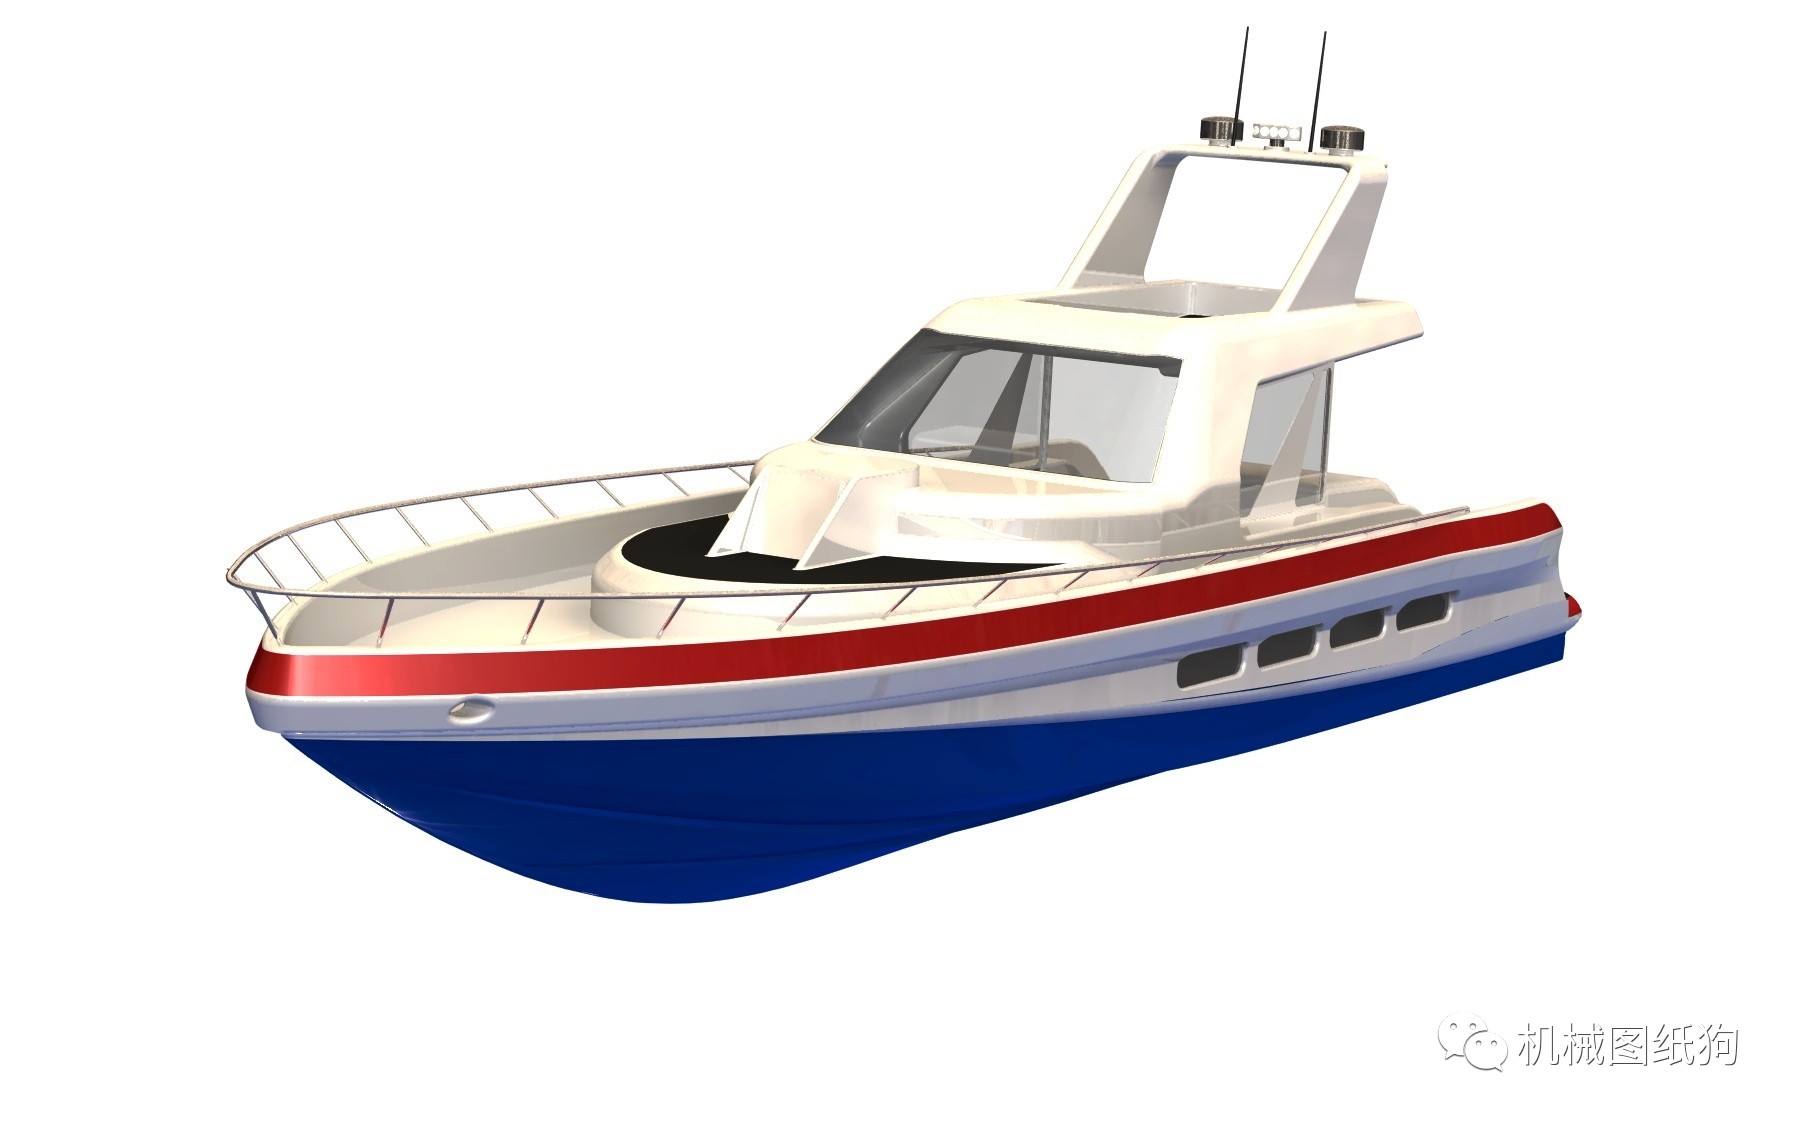 【海洋船舶】快艇纸 小船模型设计 step格式